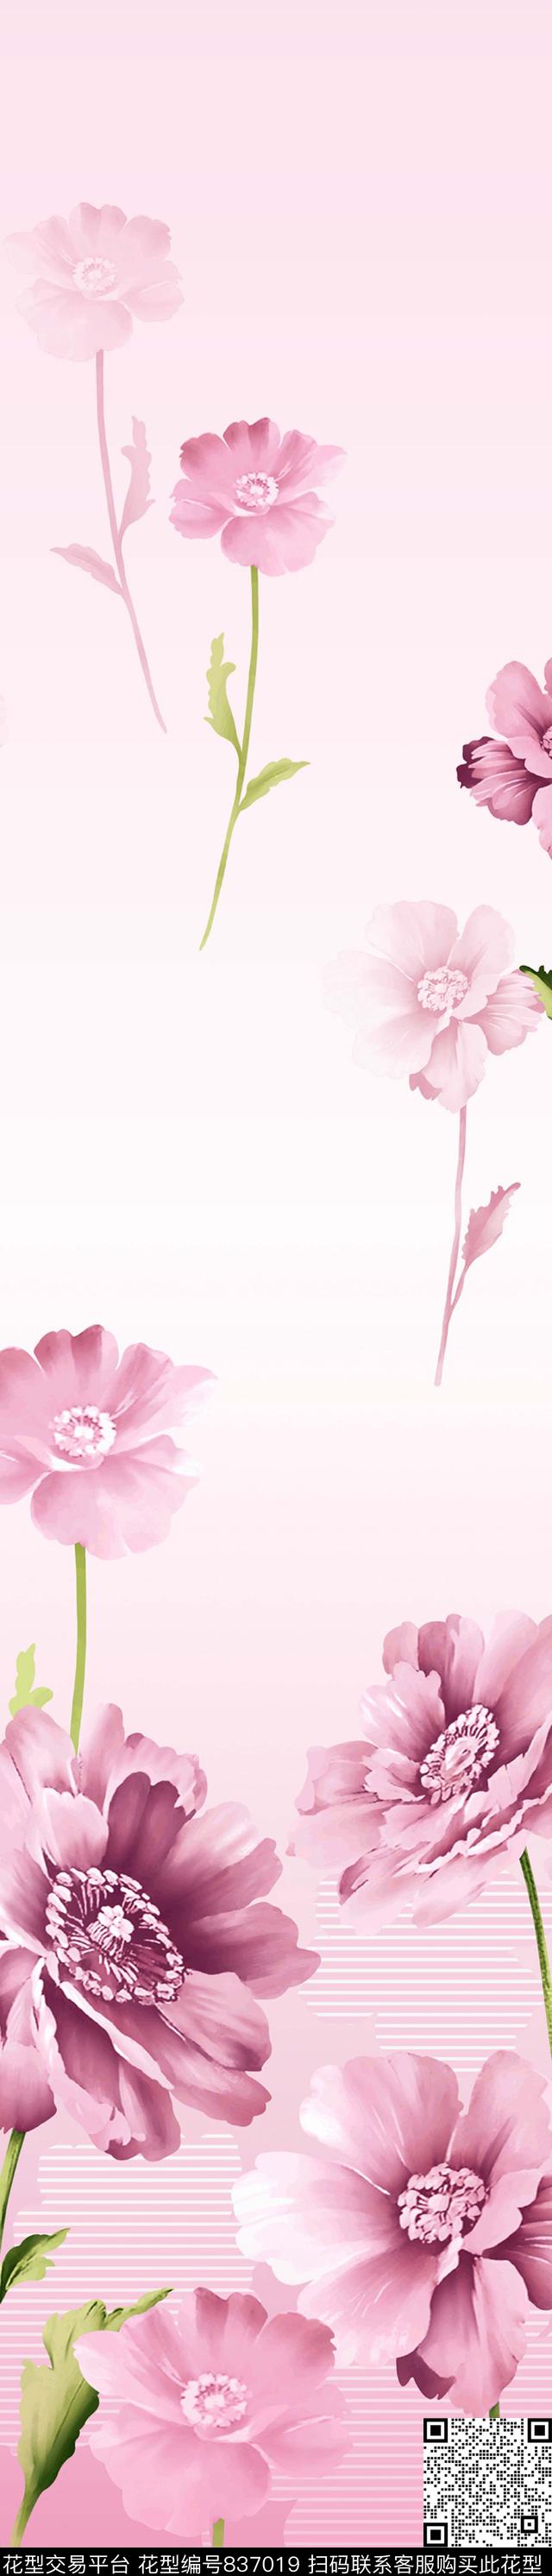 YJH170424a.jpg - 837019 - 花朵 花卉 窗帘 - 传统印花花型 － 窗帘花型设计 － 瓦栏